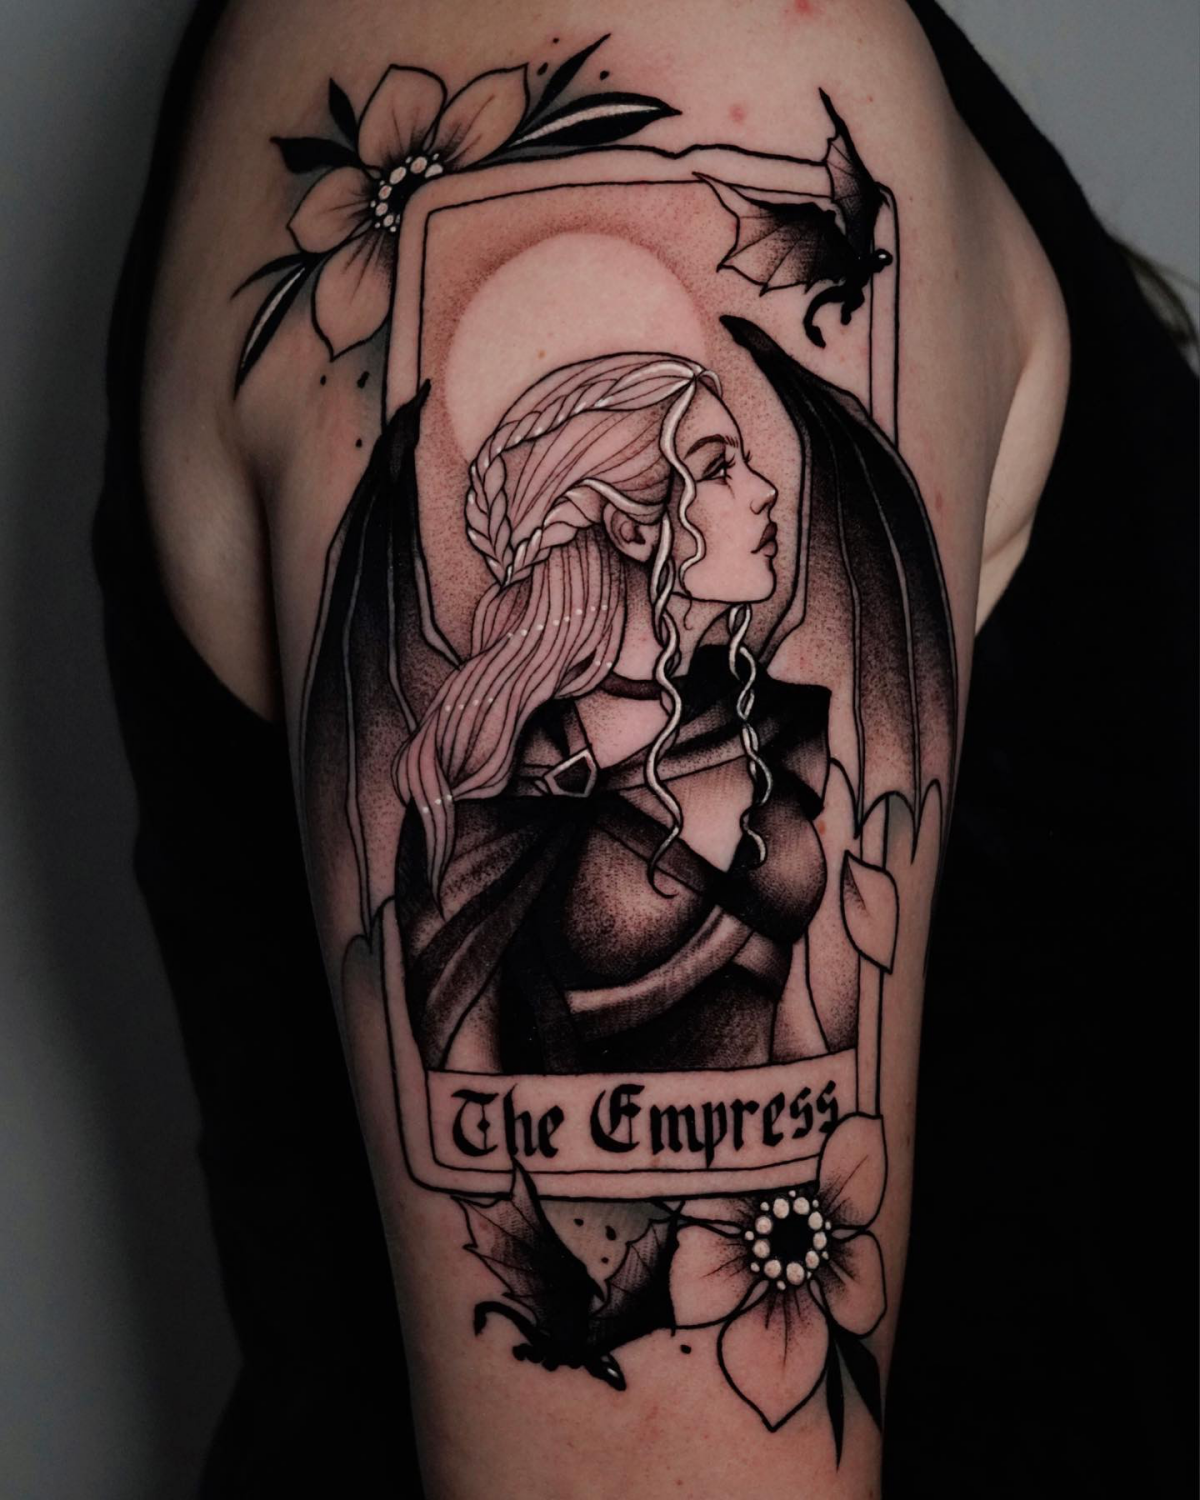 the empress tarot card daenerys khaleesi tattoo